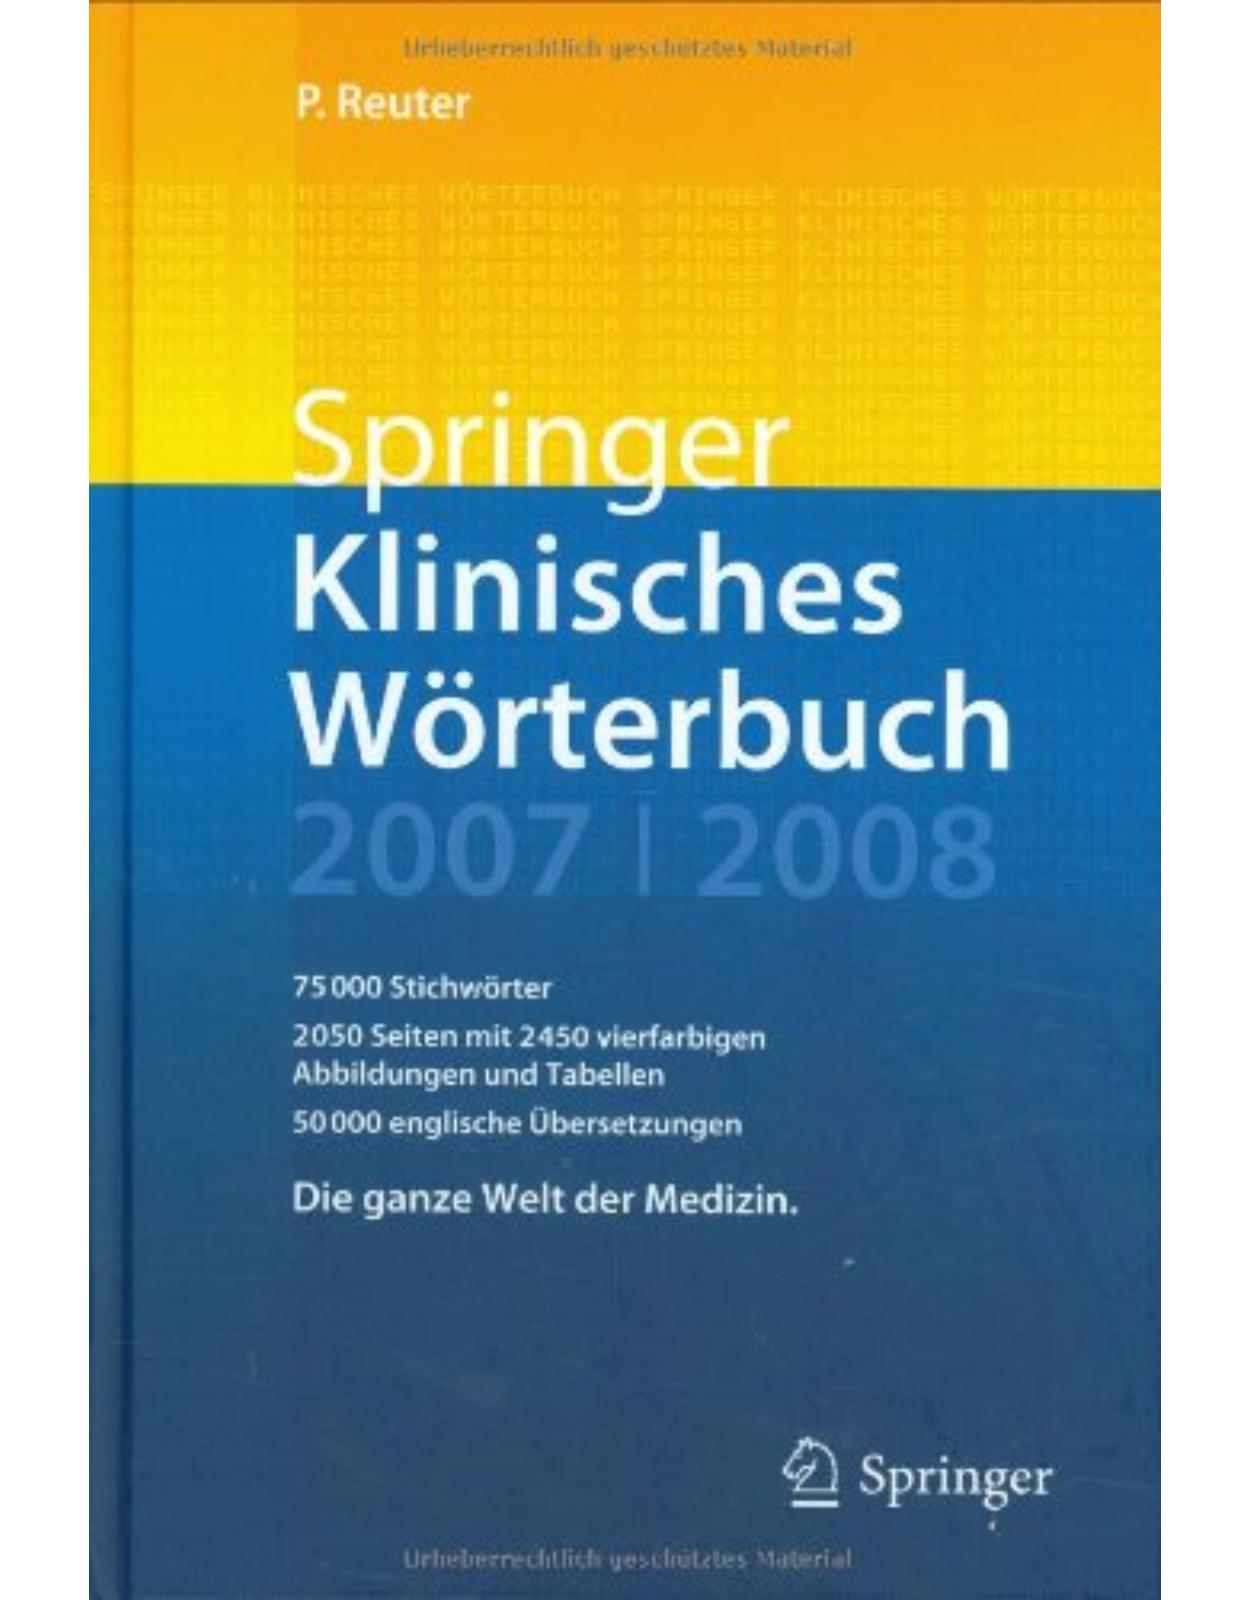 Springer Klinisches Worterbuch 2007-2008